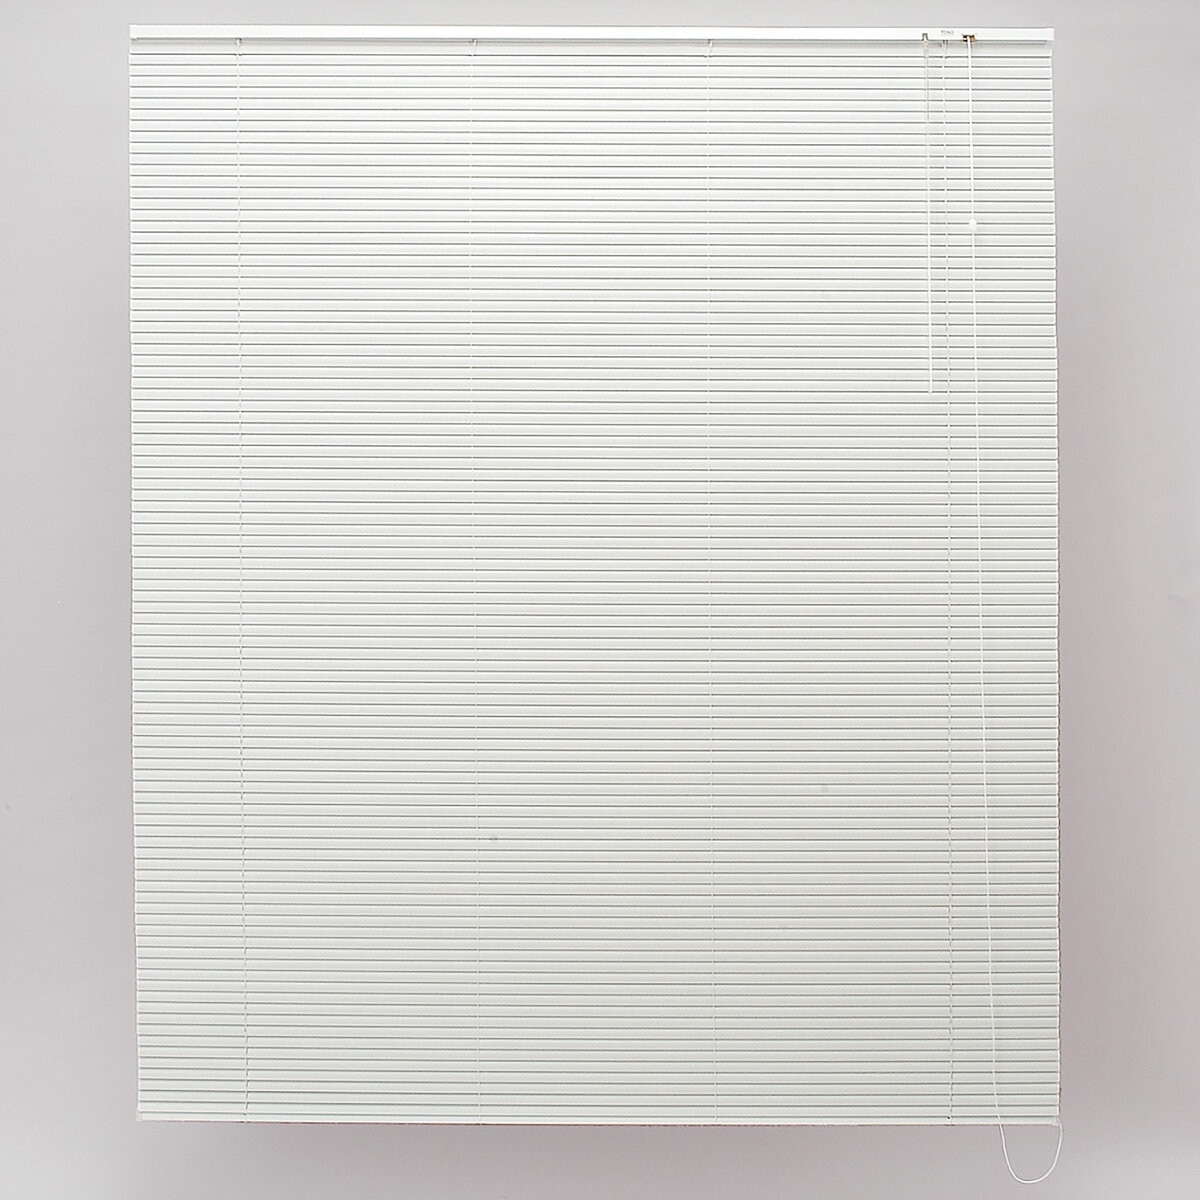 トーソー スポーラR IB アルミブラインド 178 cm x 210 cm ホワイト